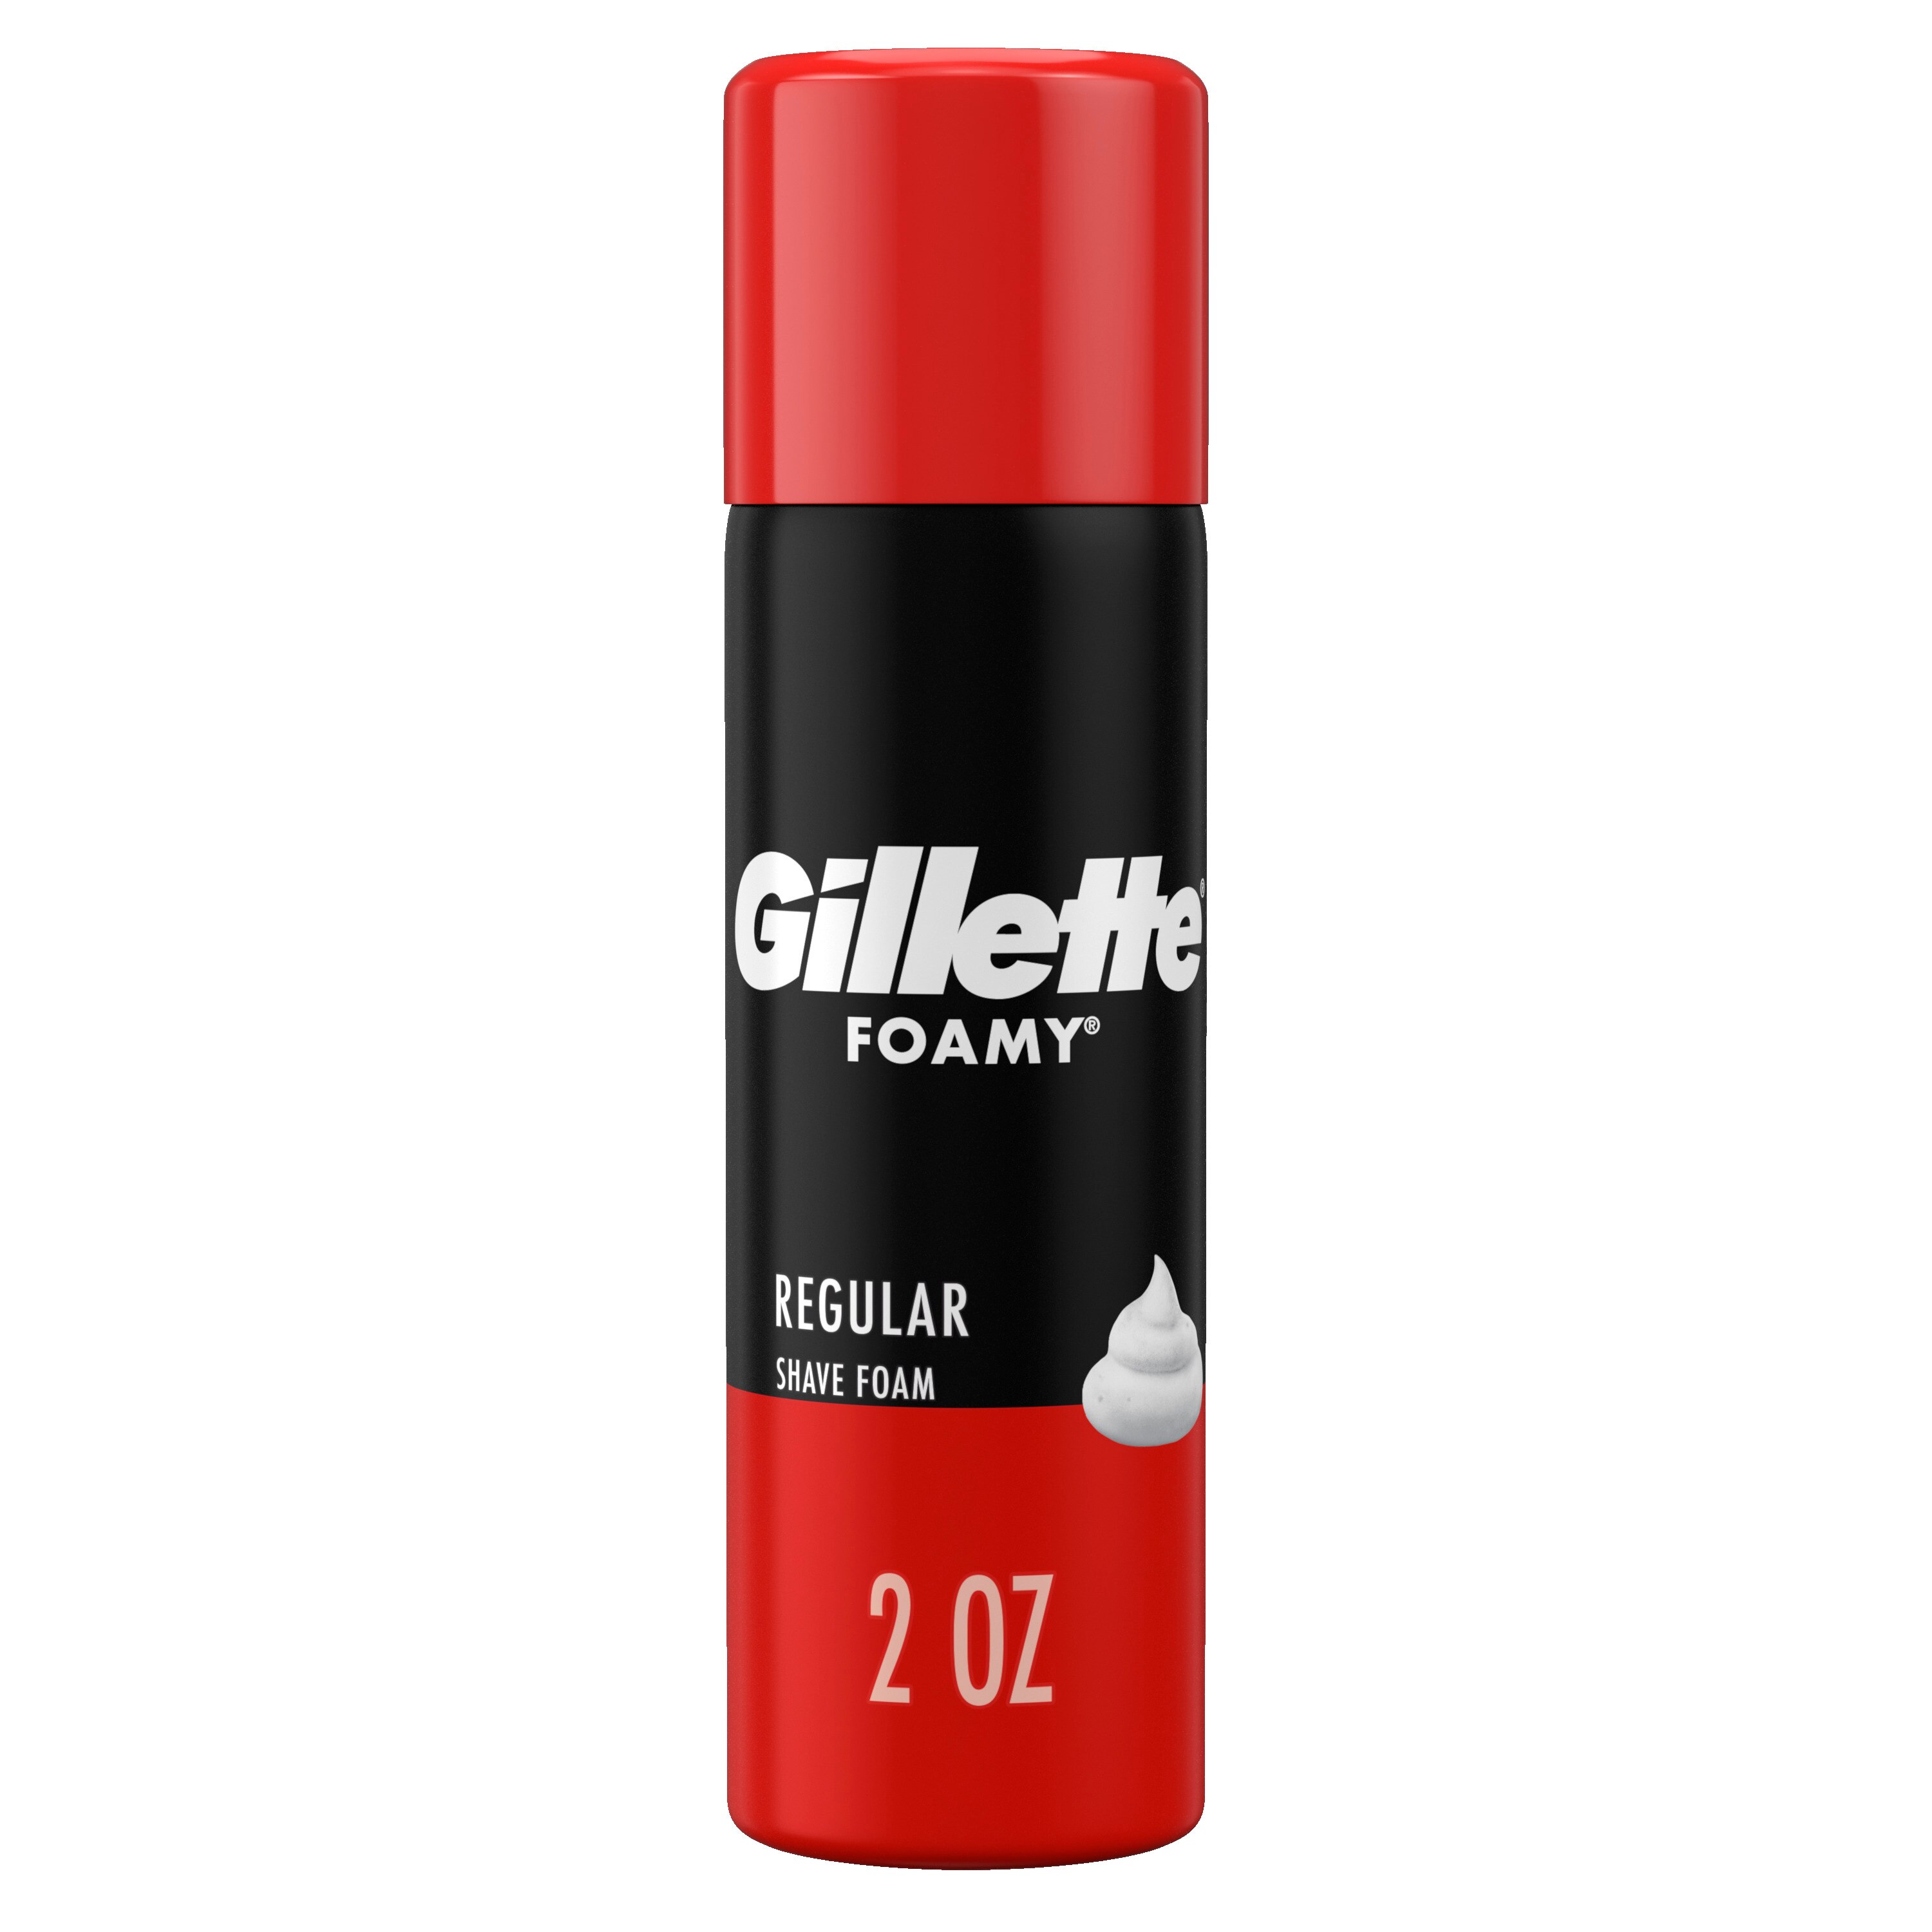 Gillette Foamy Shave Foam, Regular